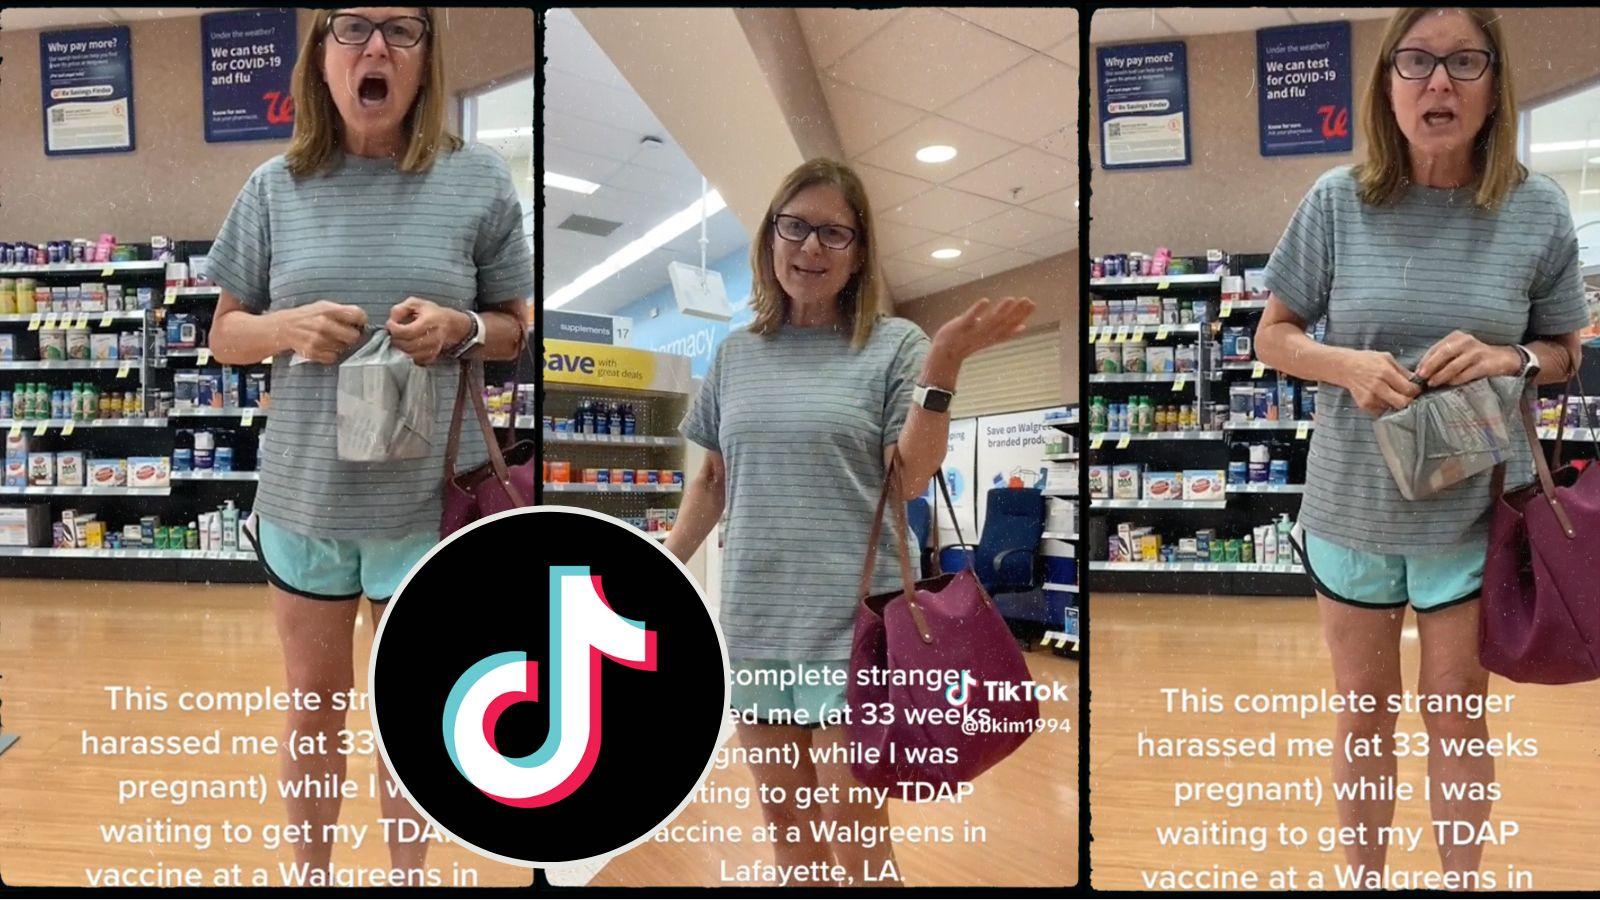 "Karen" attacks pregnant woman in Walgreens